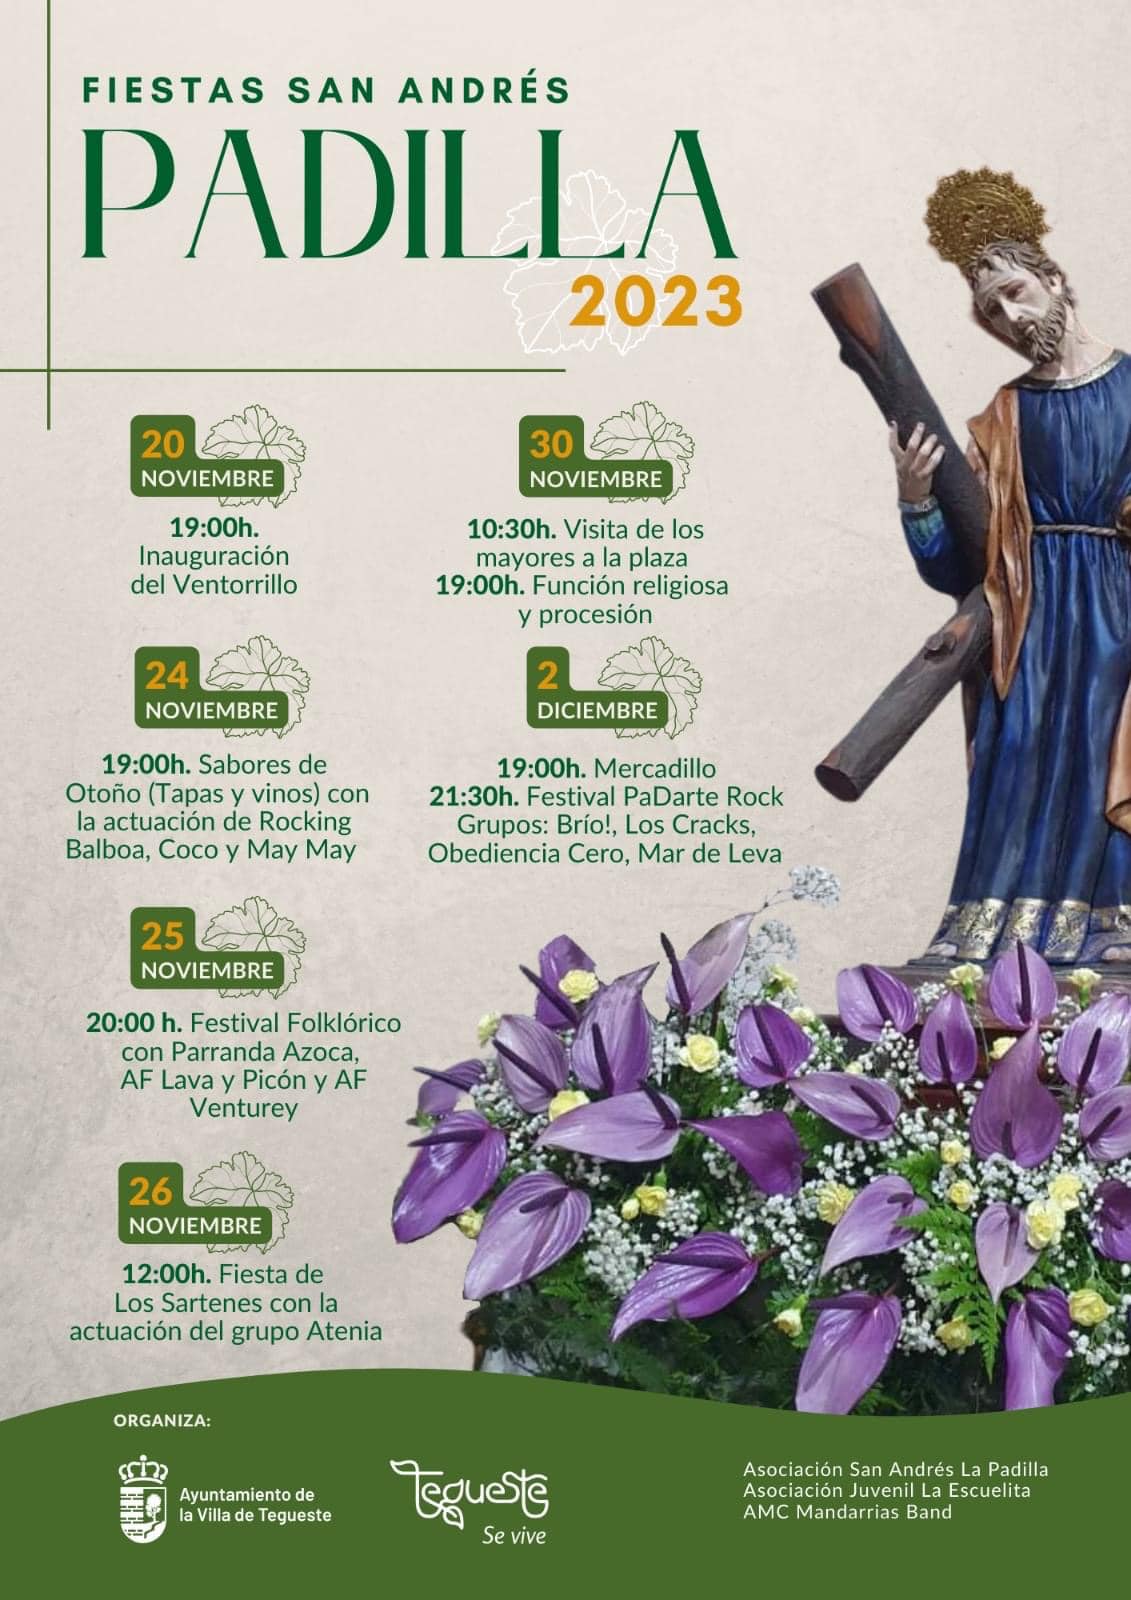 Fiestas de San Andrés en La Padilla, Tegueste 2023. Actos, Eventos, Actividades y Fechas de las Fiestas